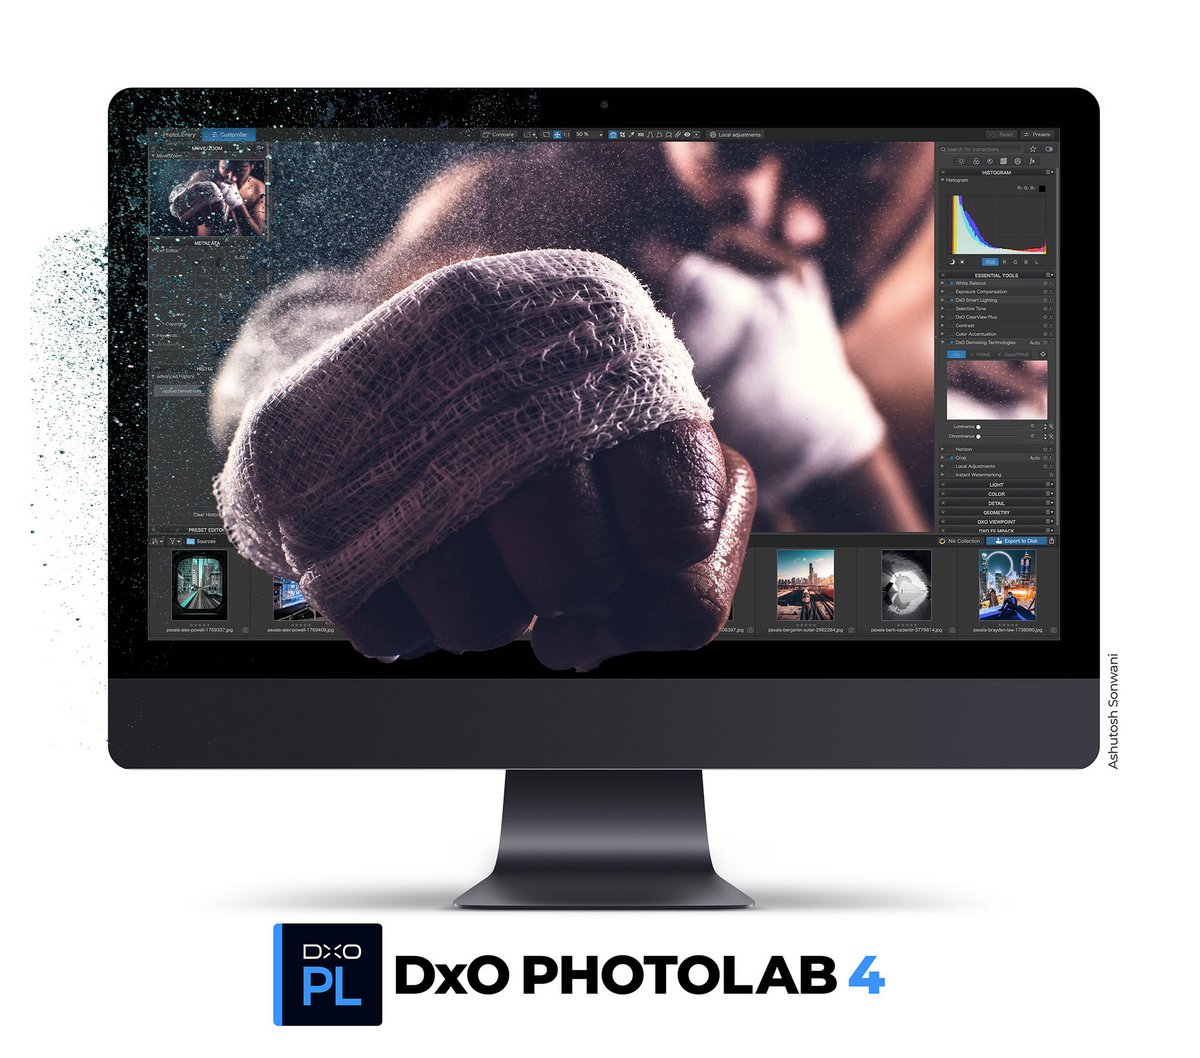 DxO Photolab 4 © DxO